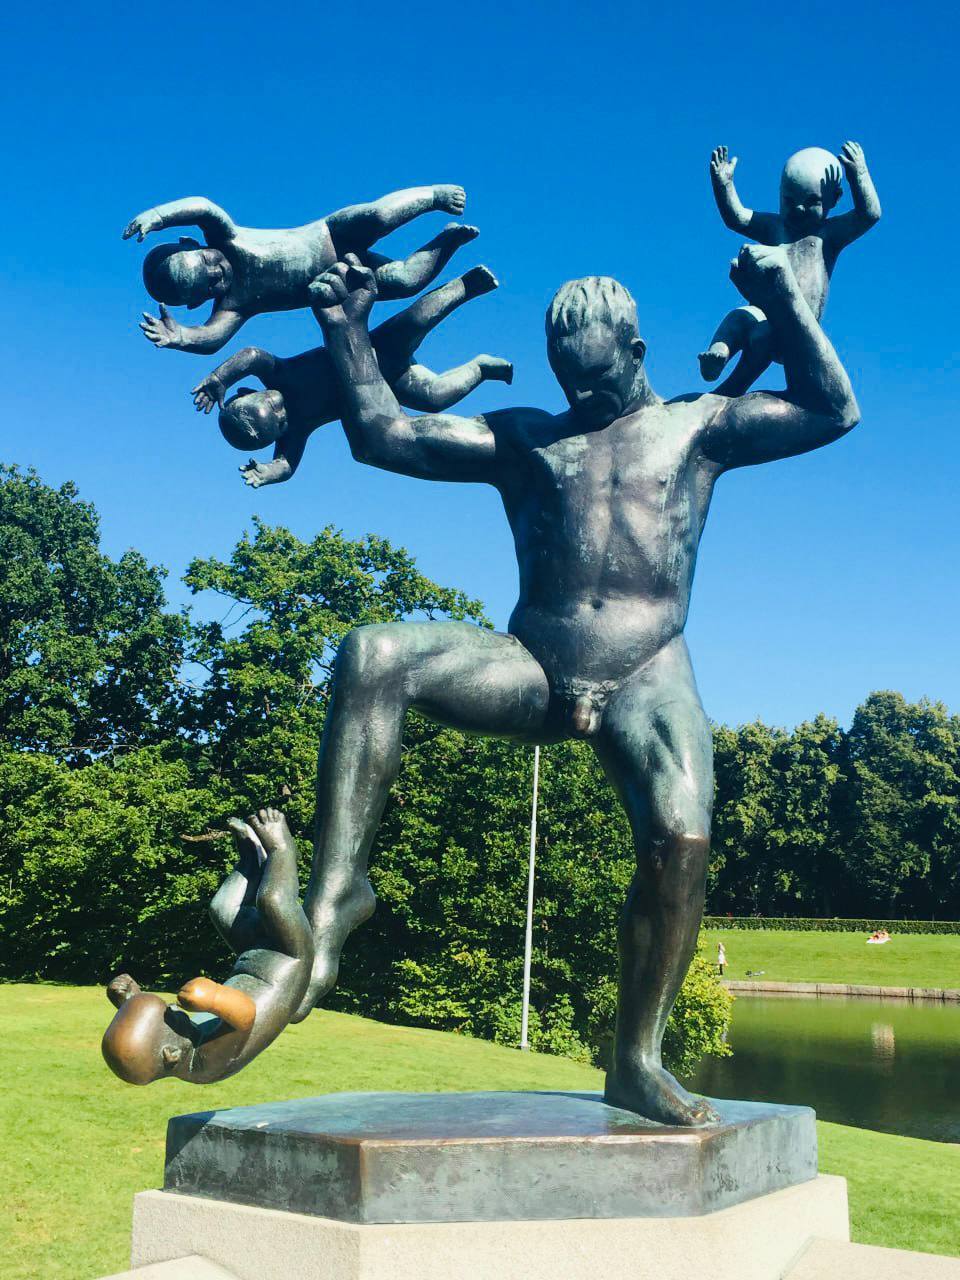  "Человек, атакованный младенцами" - одна из самых философских скульптур Вигеланда